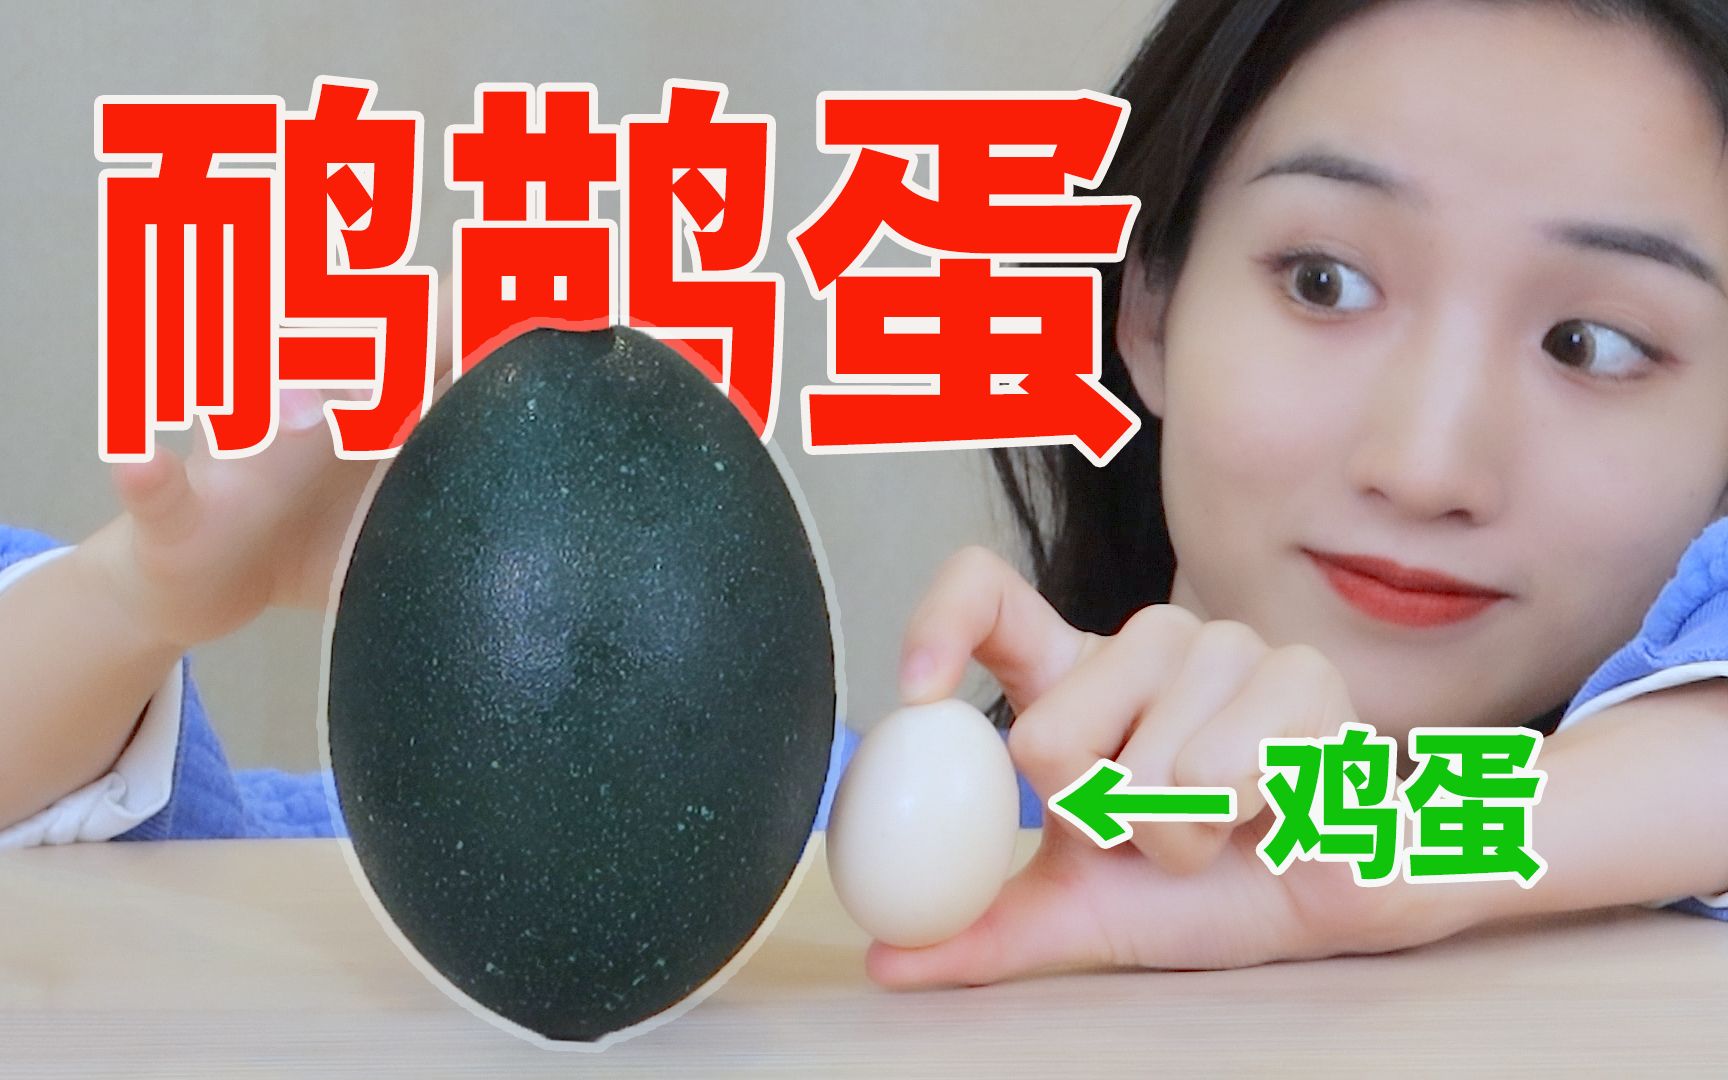 一个蛋就卖188块！试吃世界第二大蛋——鸸鹋蛋！